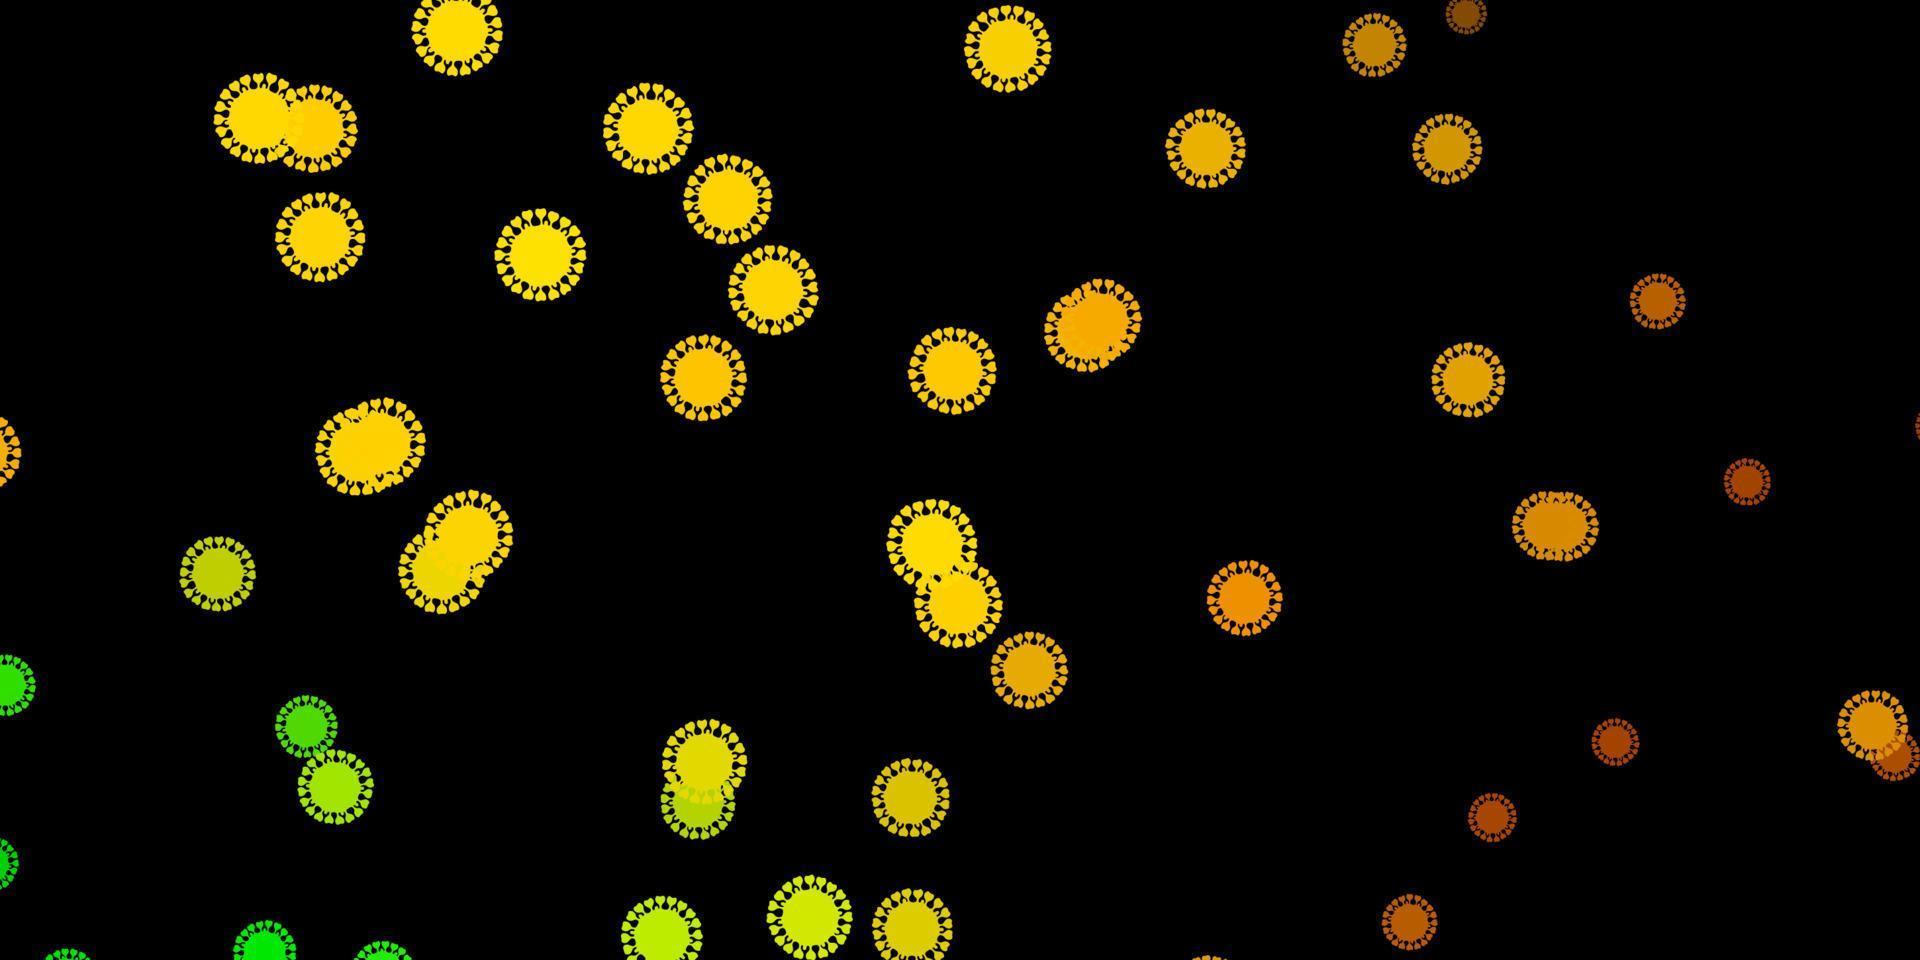 sfondo vettoriale verde scuro, giallo con simboli di virus.